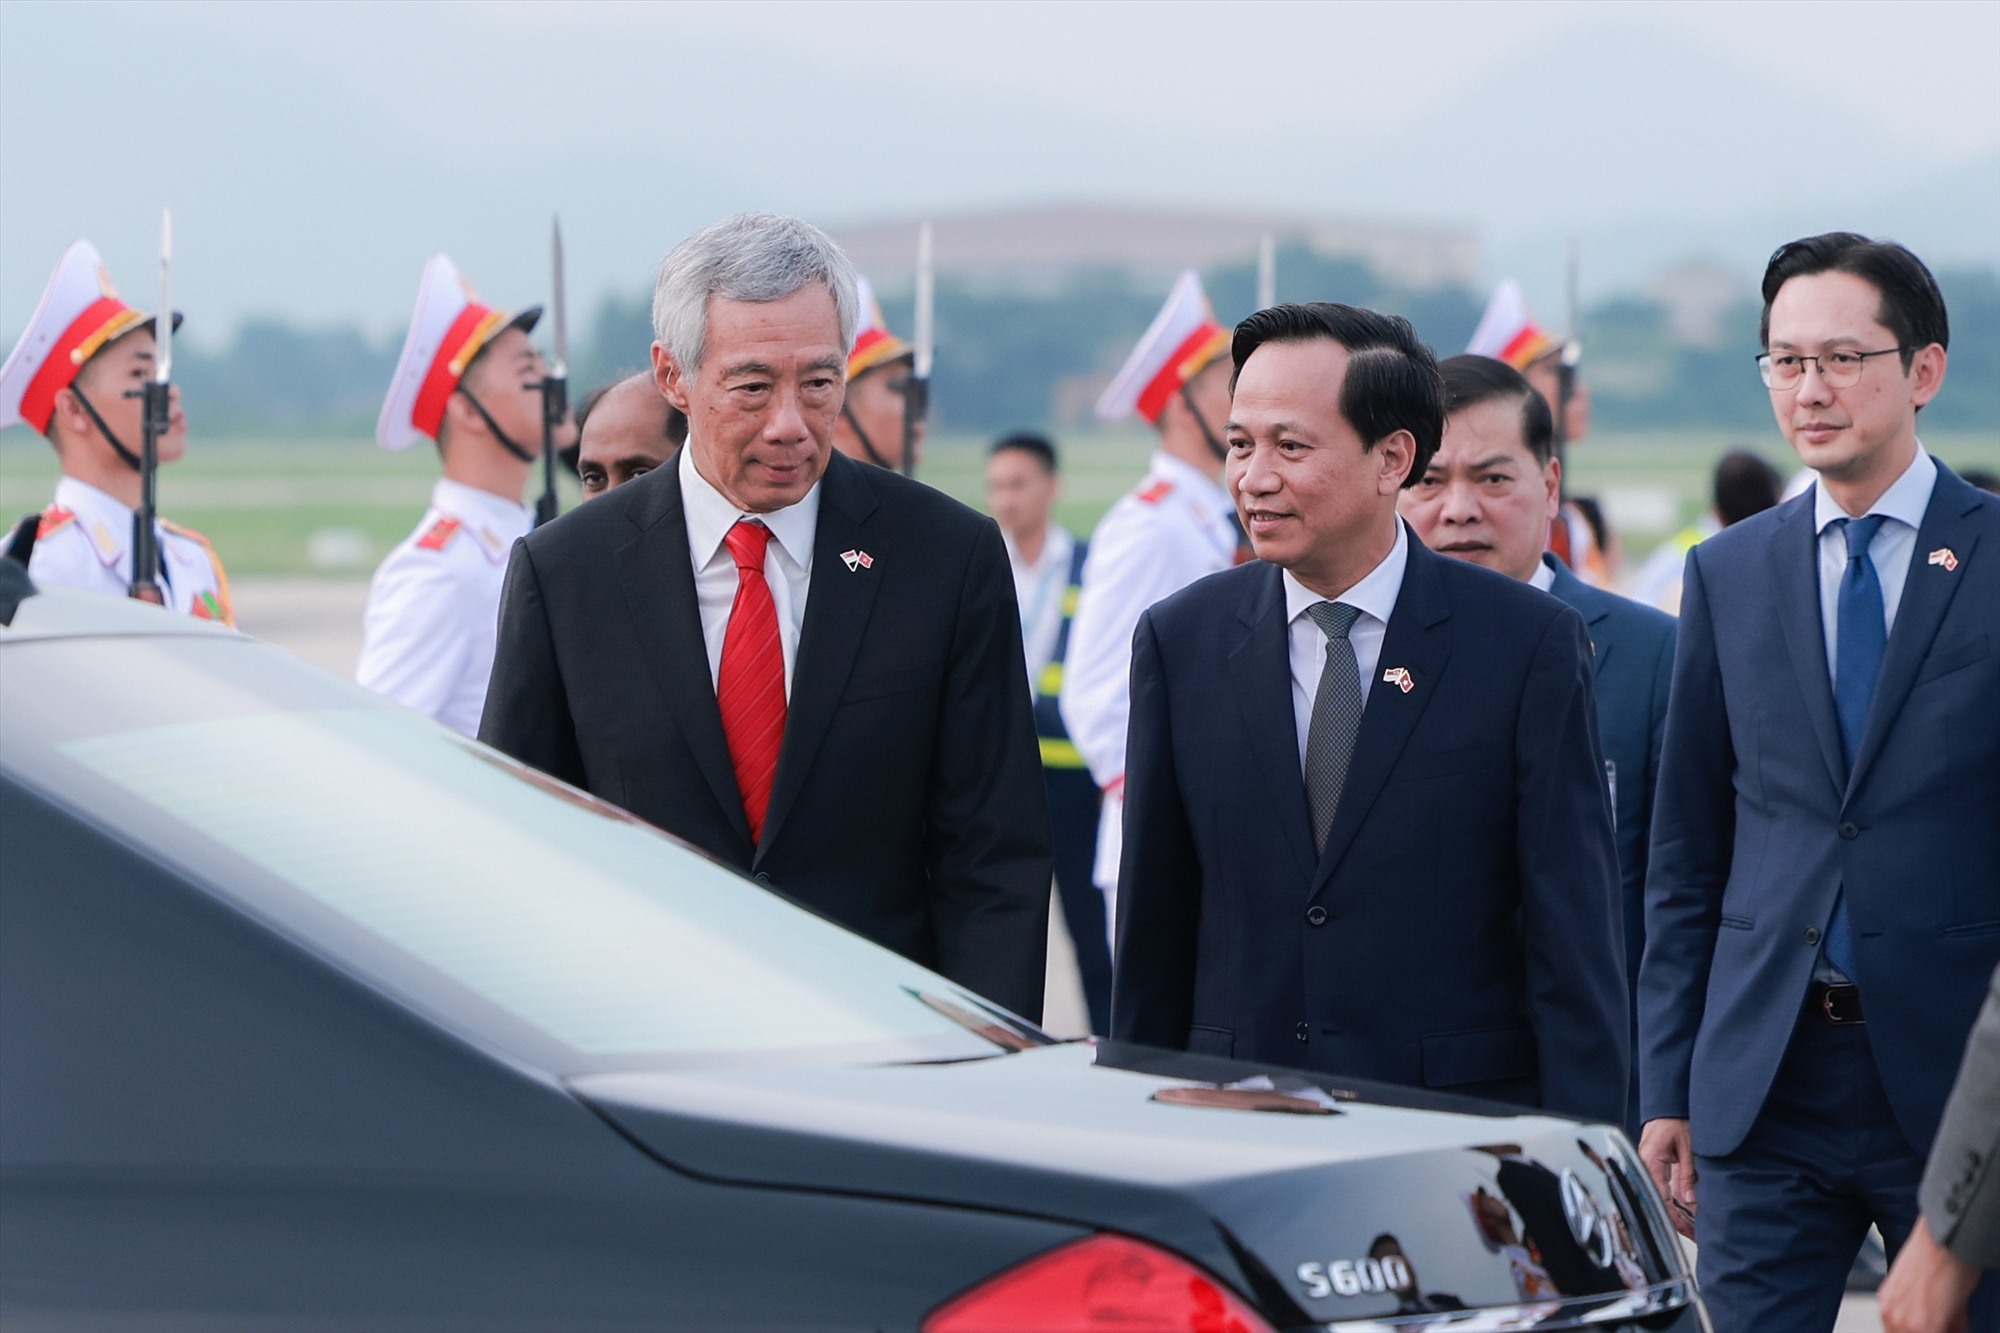 Trong chuyến thăm lần này, Thủ tướng Lý Hiển Long sẽ dự một loạt các hoạt động, các sự kiện quan trọng thể hiện sự hợp tác toàn diện, tin cậy lẫn nhau giữa Việt Nam và Singapore. Ảnh: Hải Nguyễn